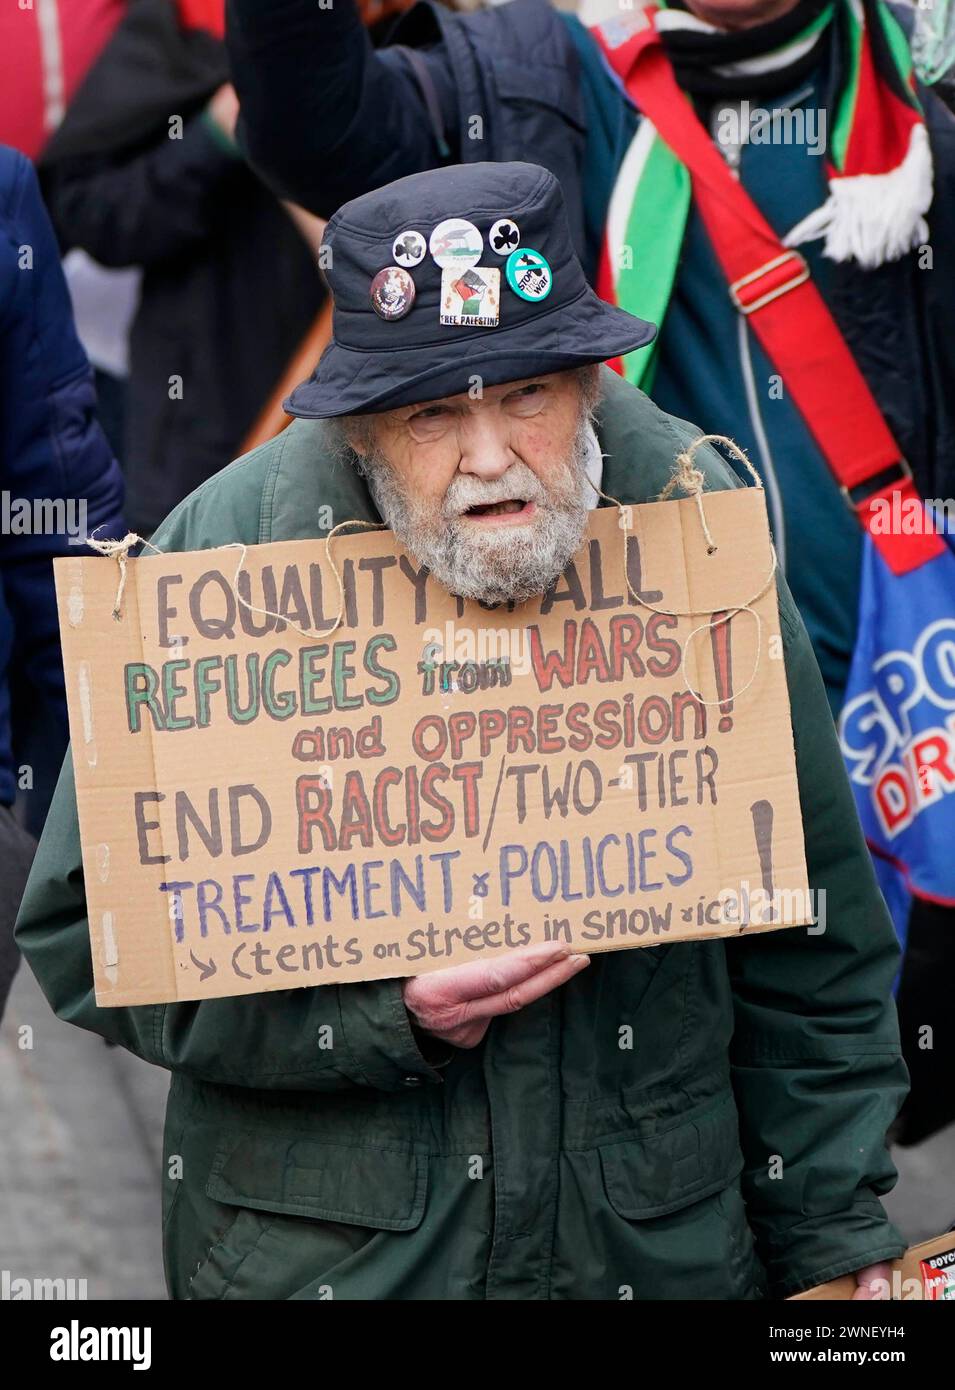 Die Menschen während des solidaritätsmarsches in Dublin. Die Demonstration wird durchgeführt, um die Unterstützung für Vielfalt und Gleichheit zu zeigen und Rassismus, Hass und Krieg anzuprangern. Bilddatum: Samstag, 2. März 2024. Stockfoto